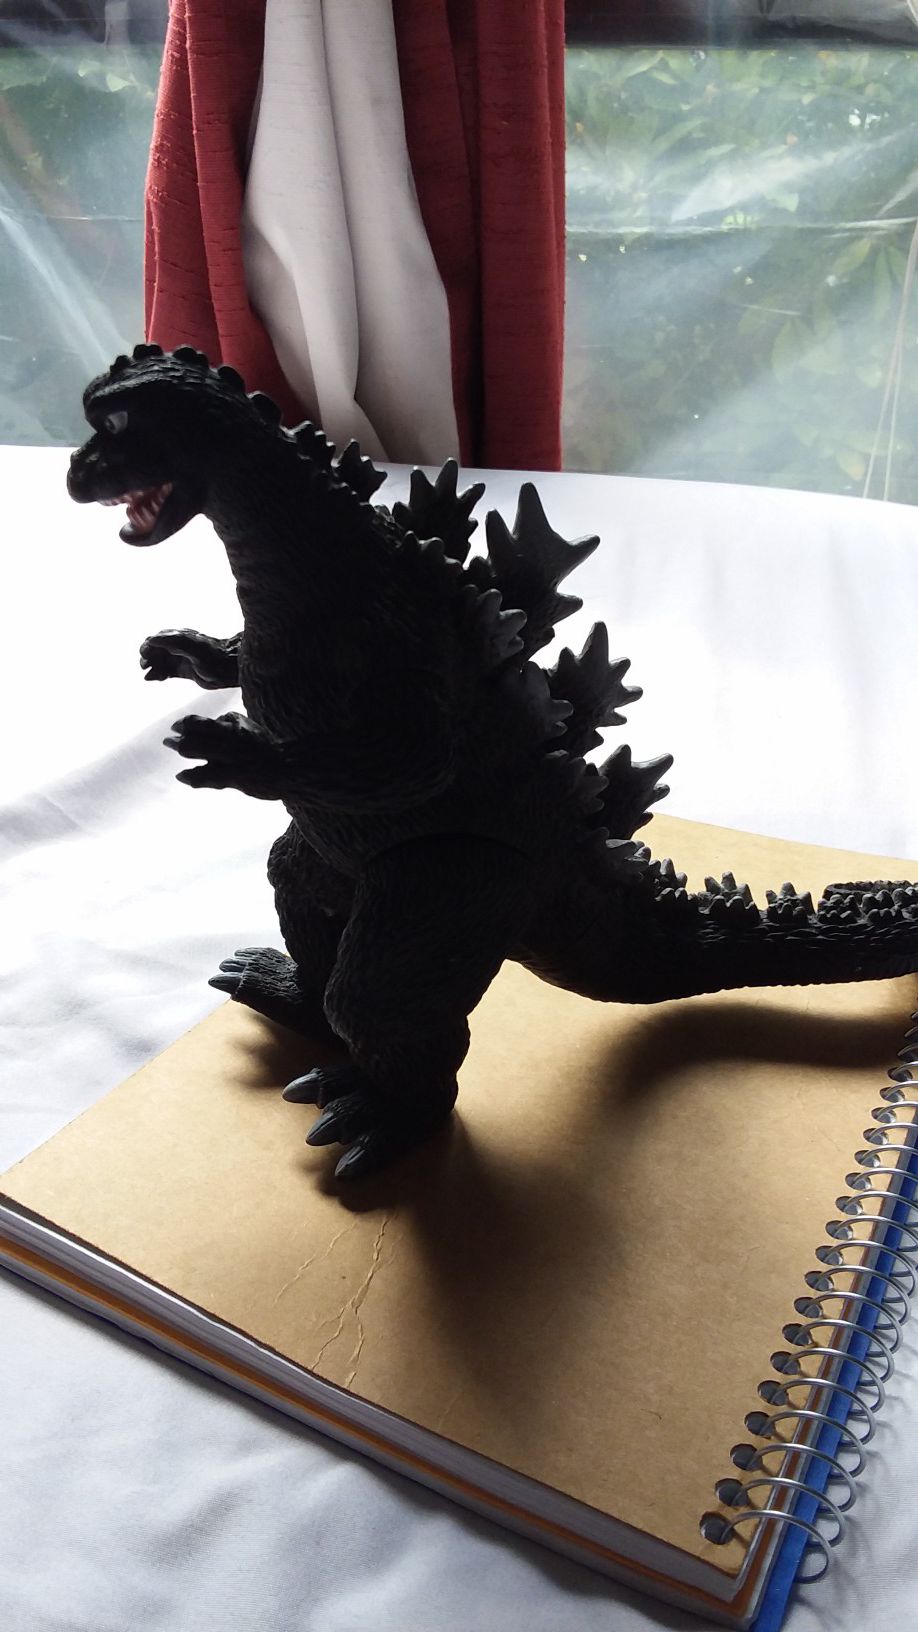 Godzilla figure